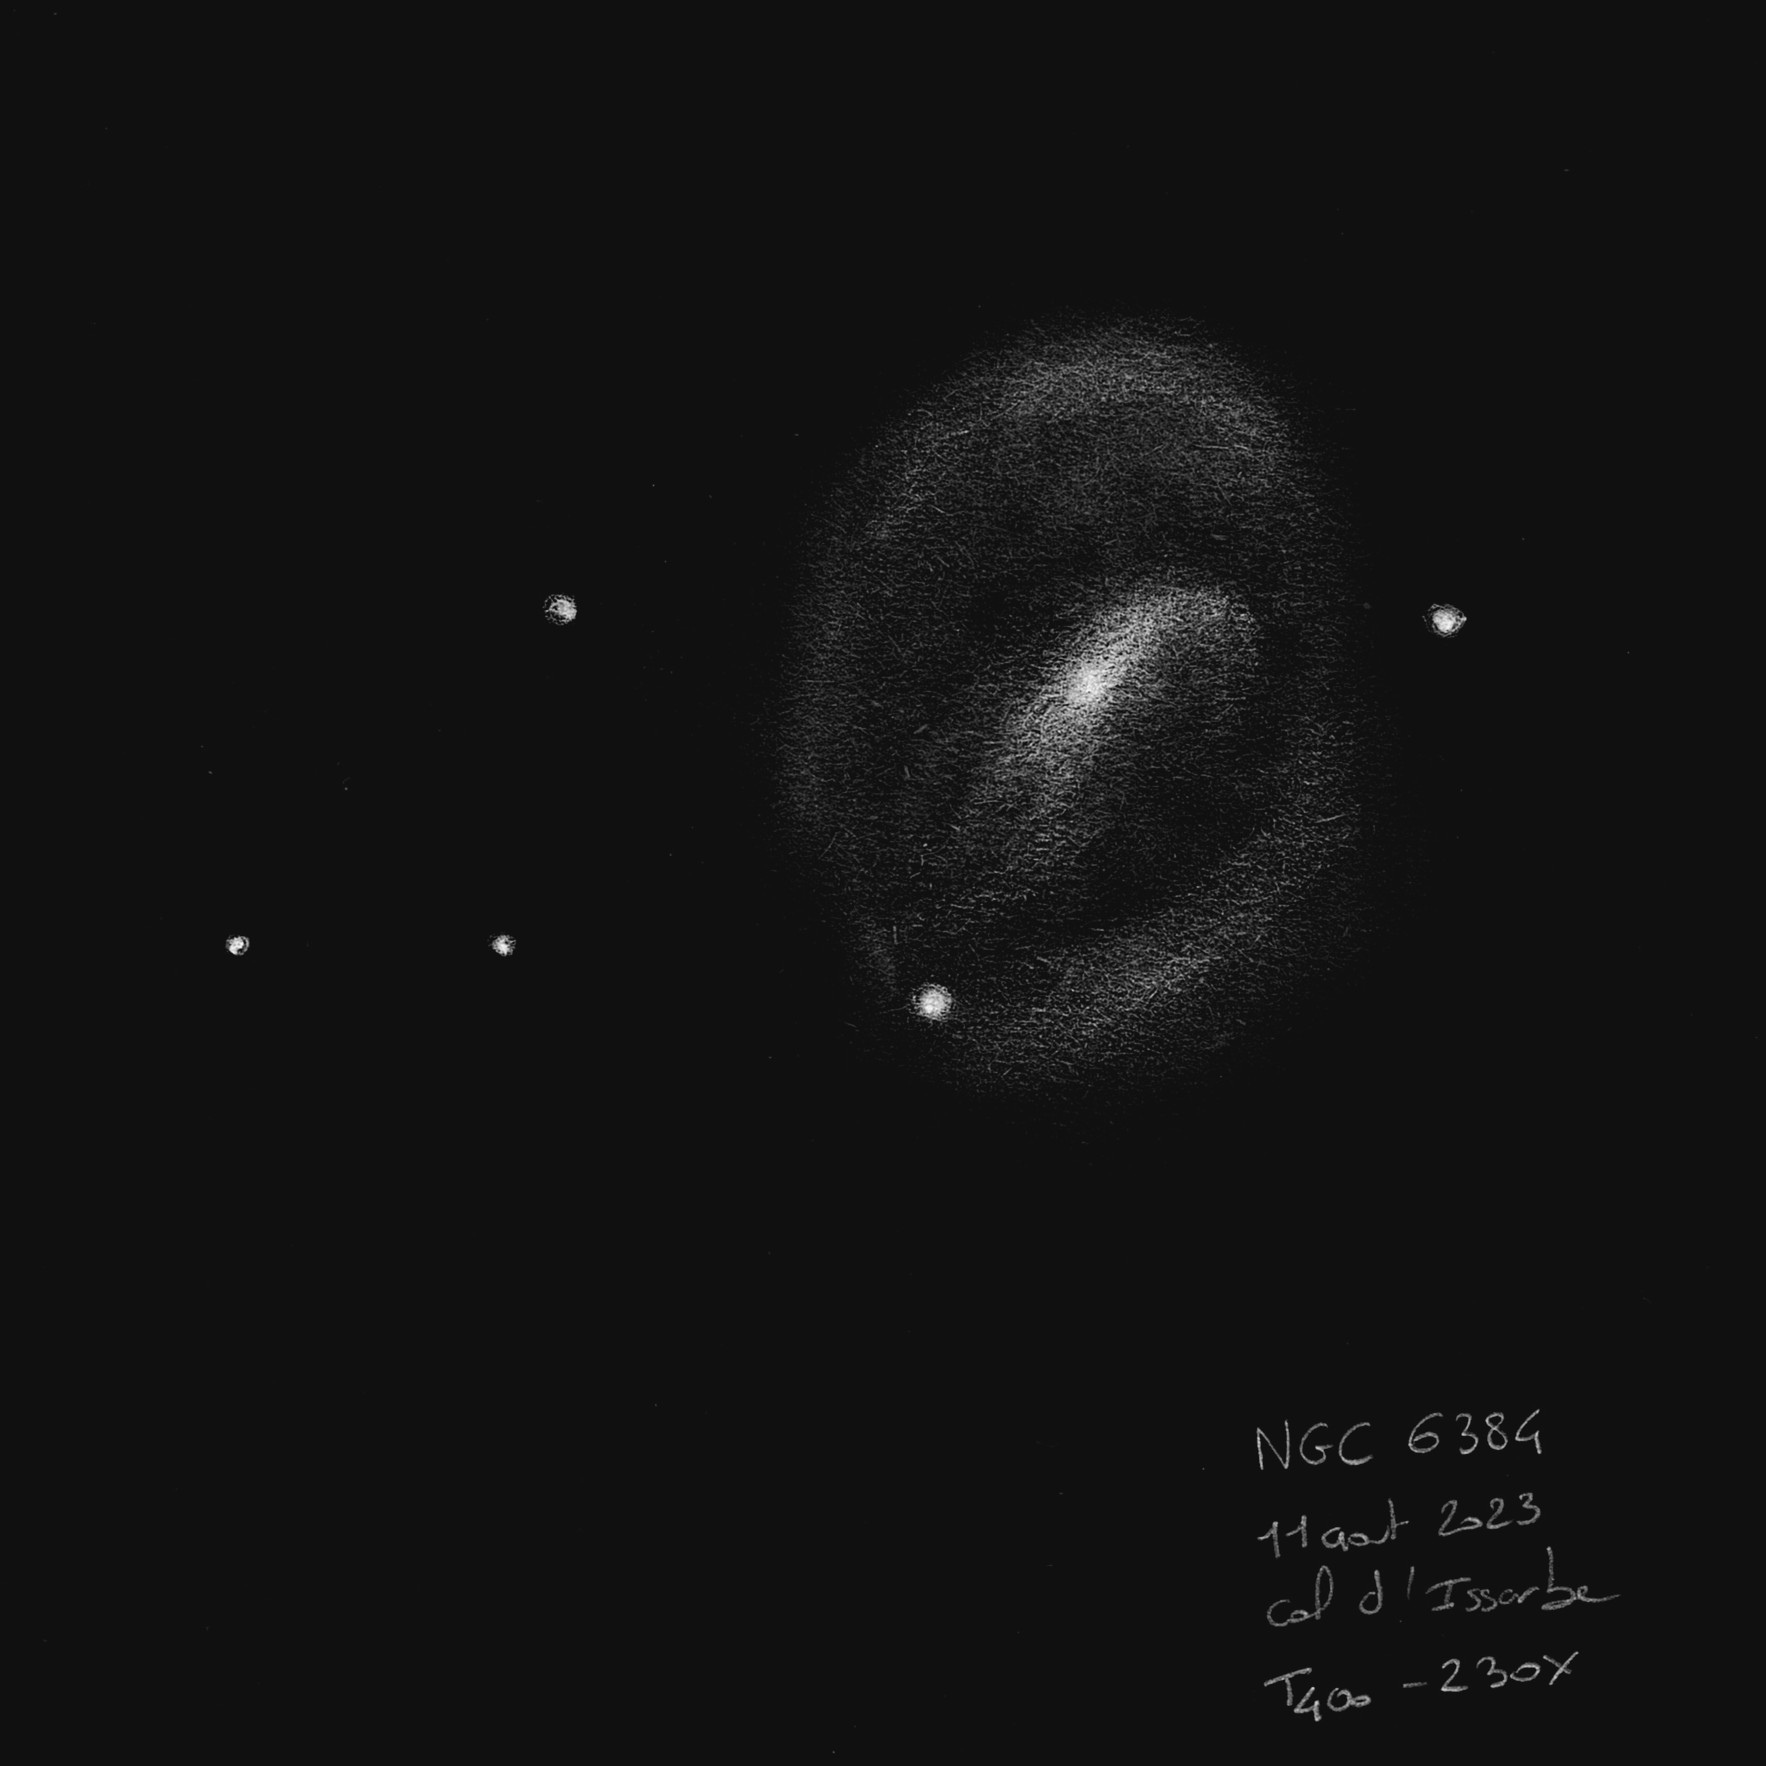 64ecf41f6a0ee_NGC6384.jpeg.008d6622bf791c40e615a44d4f78164e.jpeg